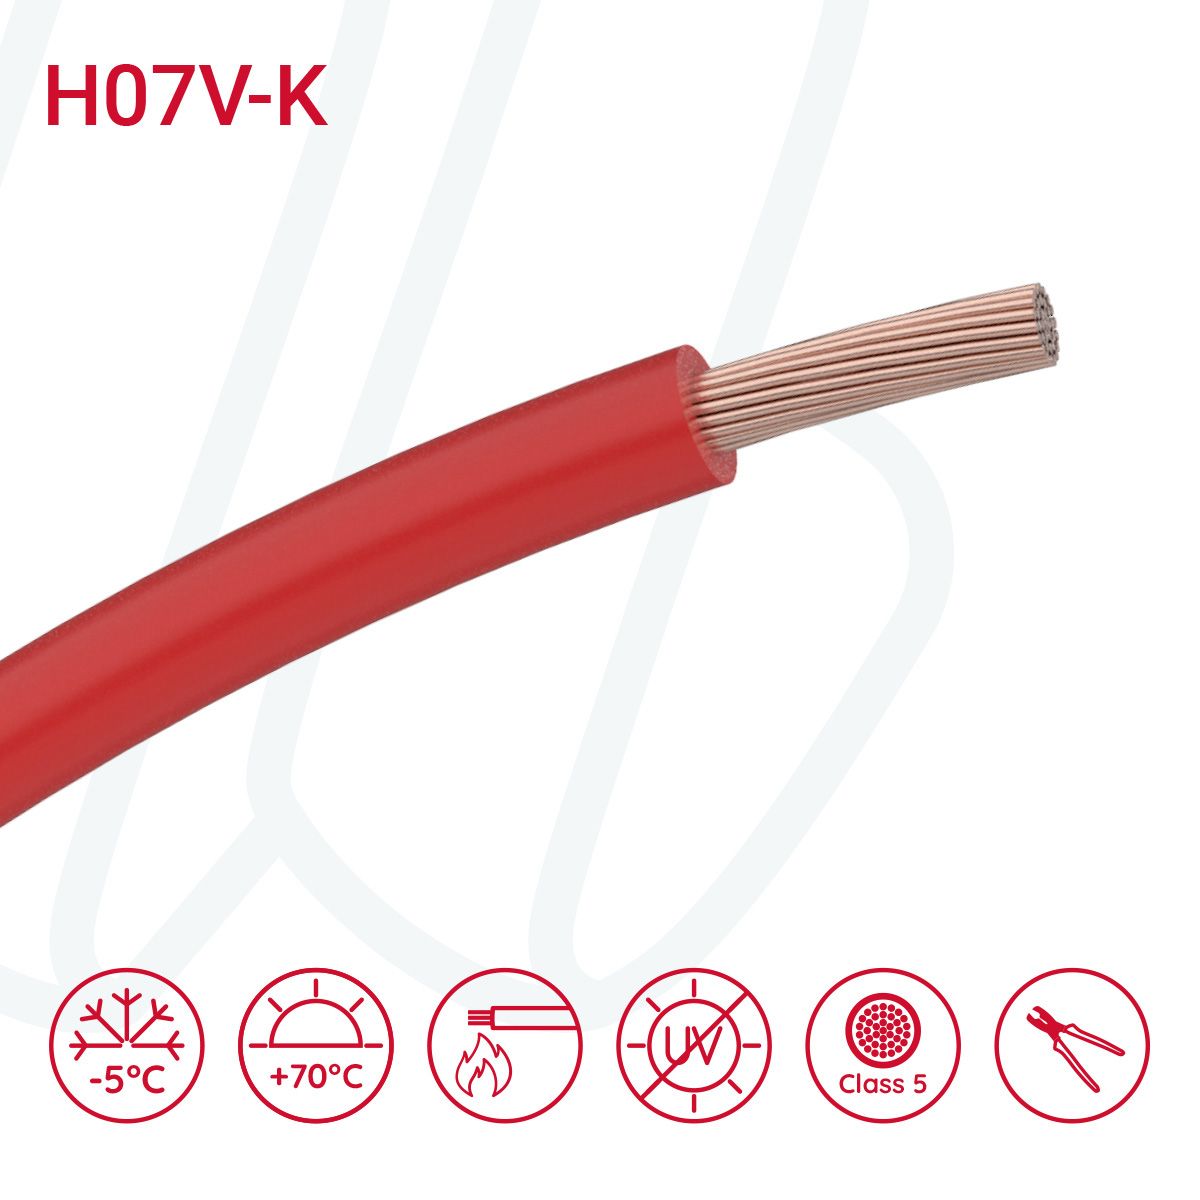 Провід монтажний гнучкий H07V-K 6 мм² червоний, 01, 6